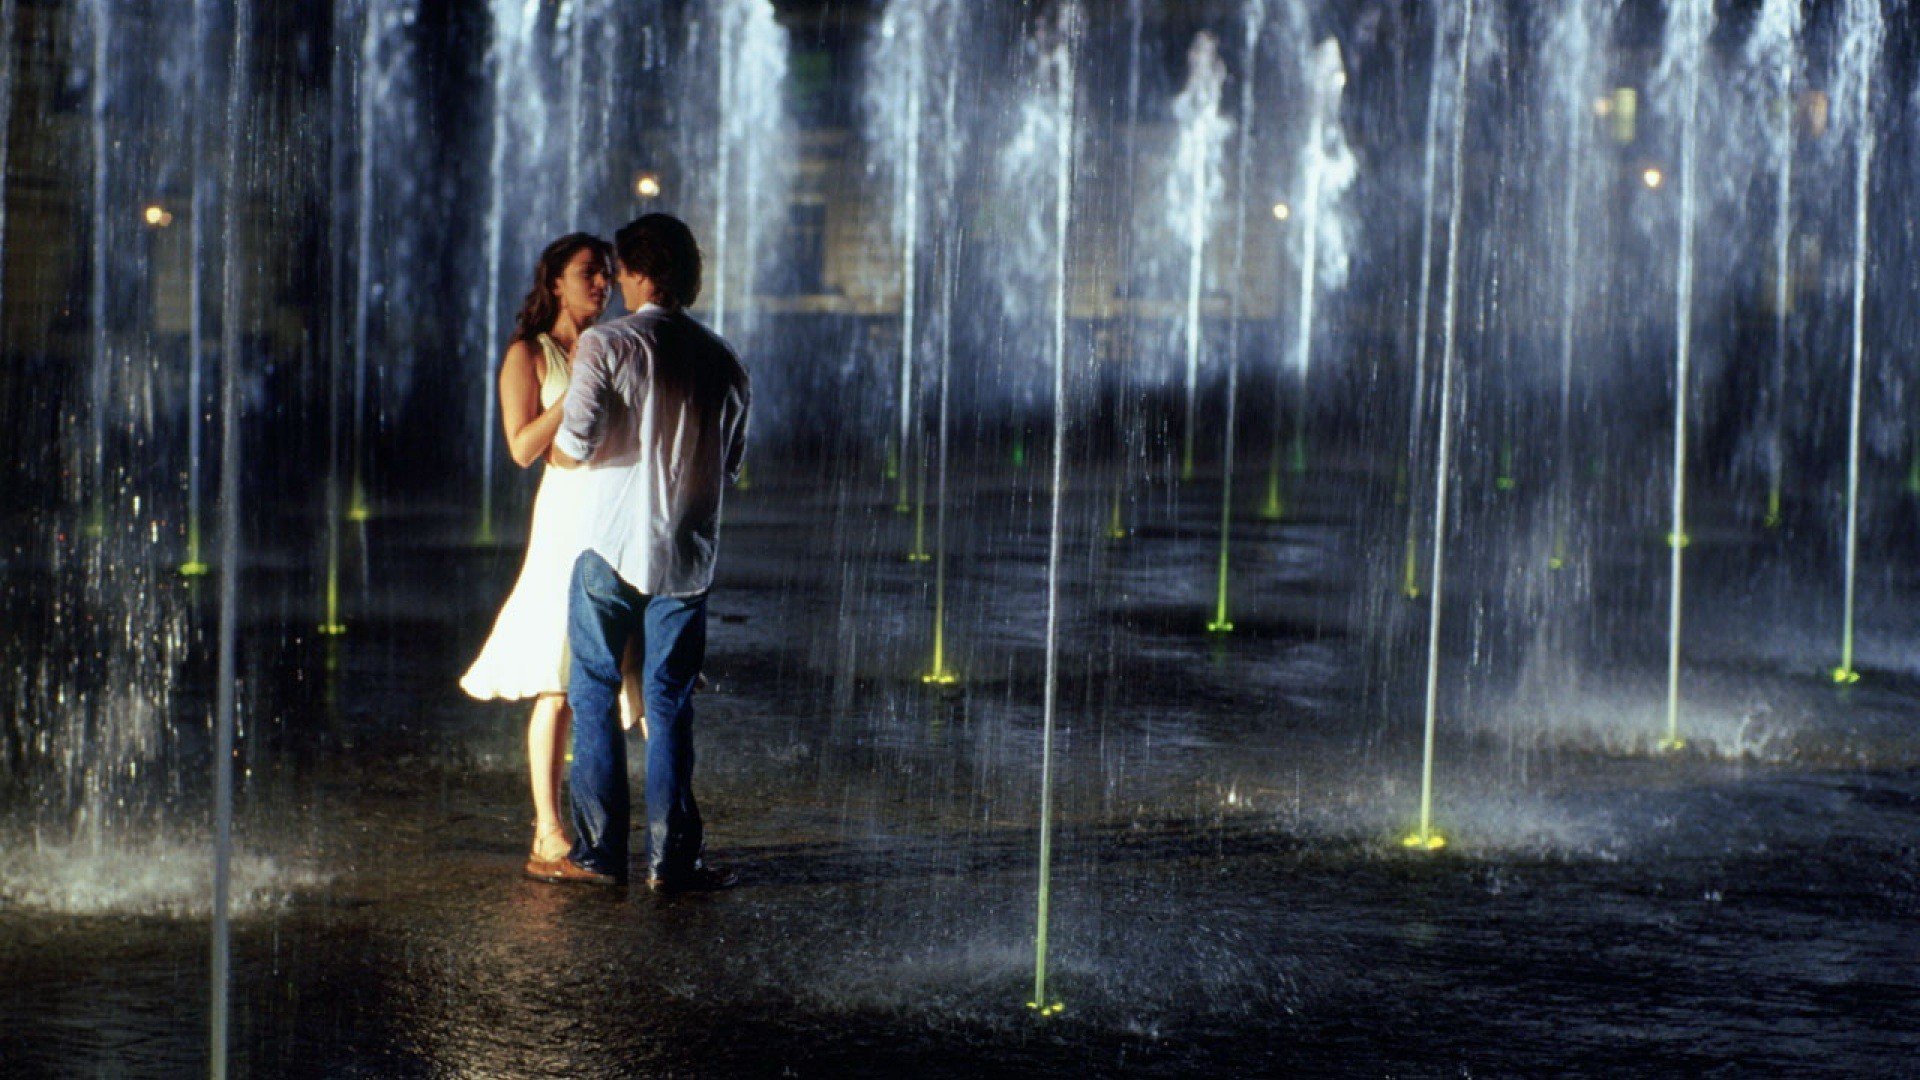 Песни нас отныне двое. Двое влюбленных под дождем. Девушка под дождем. Романтика под дождем. Любовь под дождем.